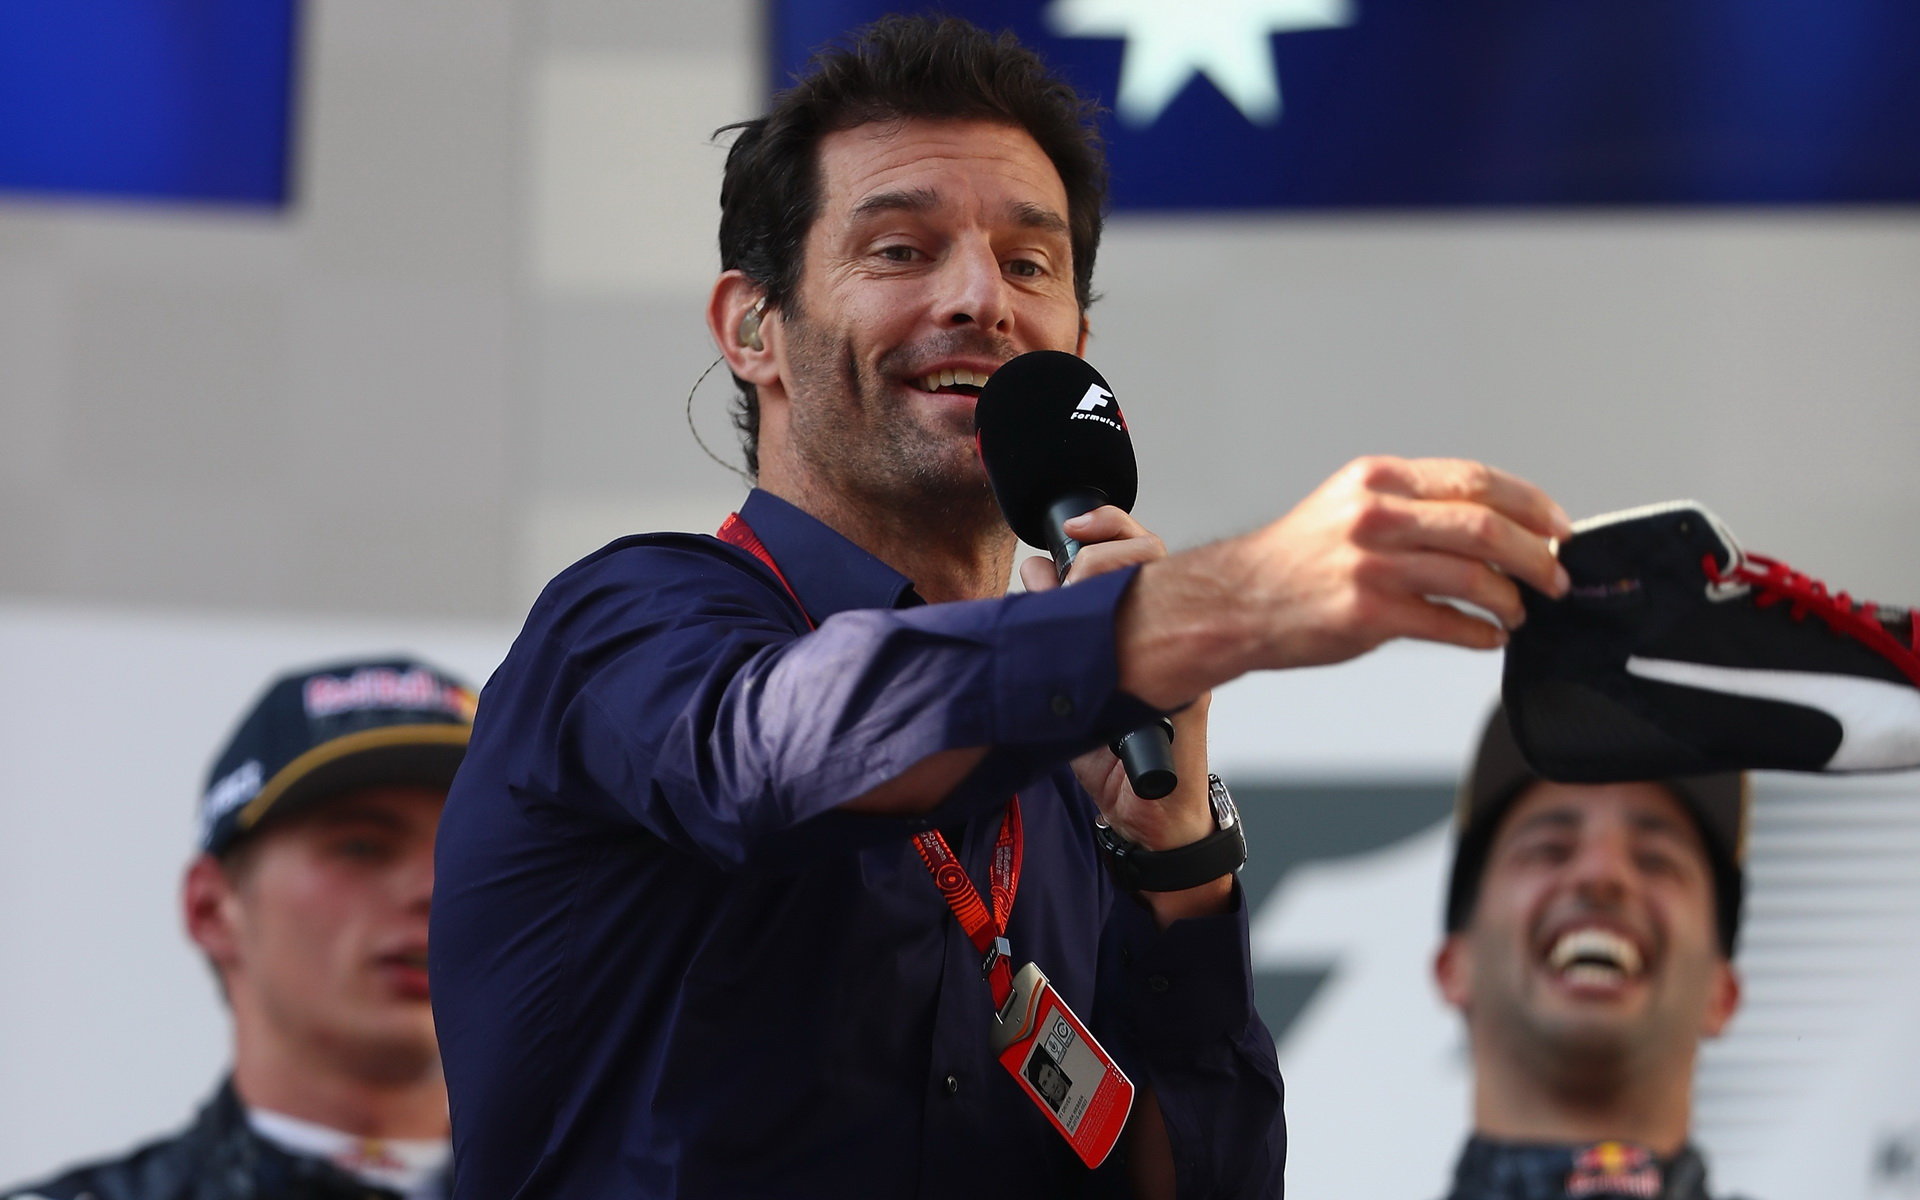 Mark Webber, který s jezdci vedl rozhovory, nabídnutou botu zahodil